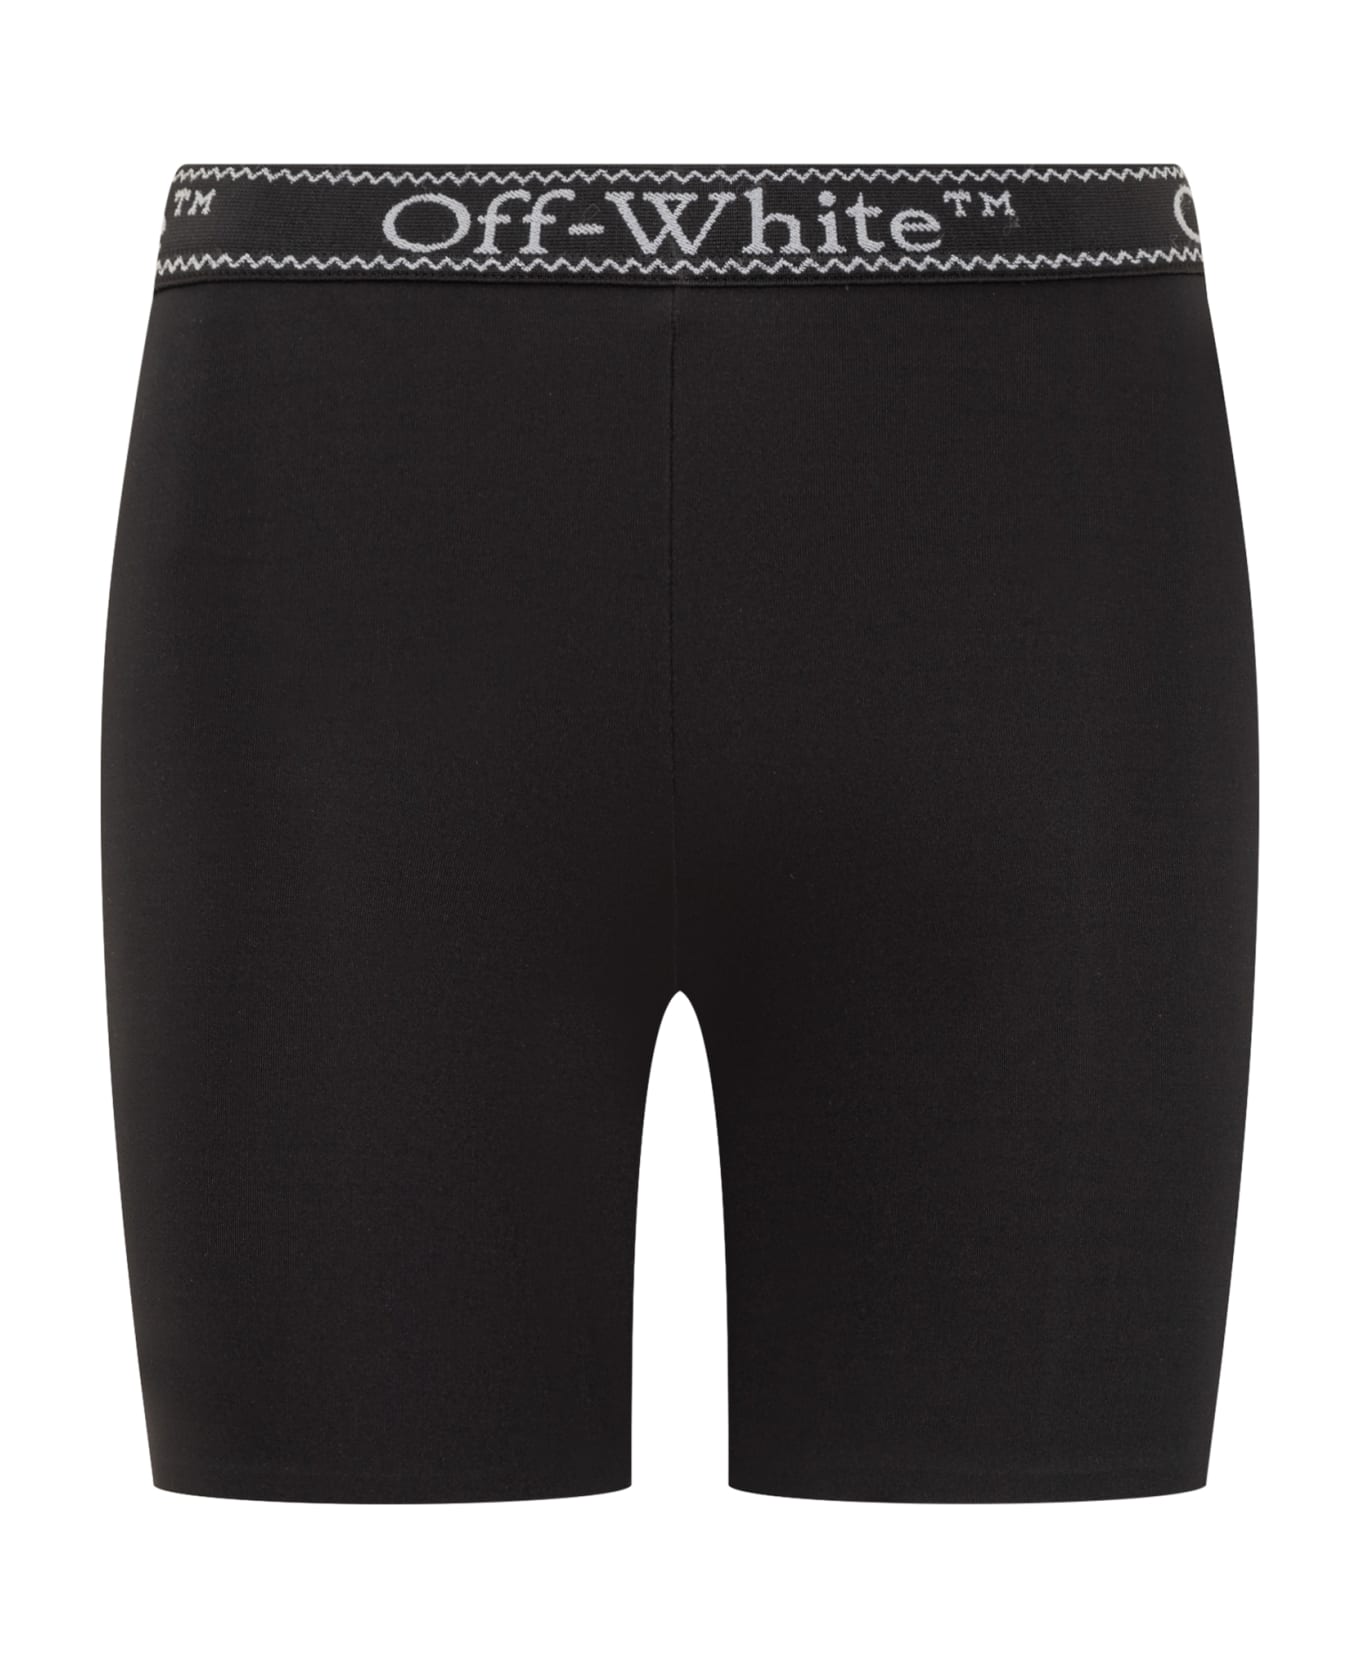 Off-White Logo Band Shorts - BLACK WHITE